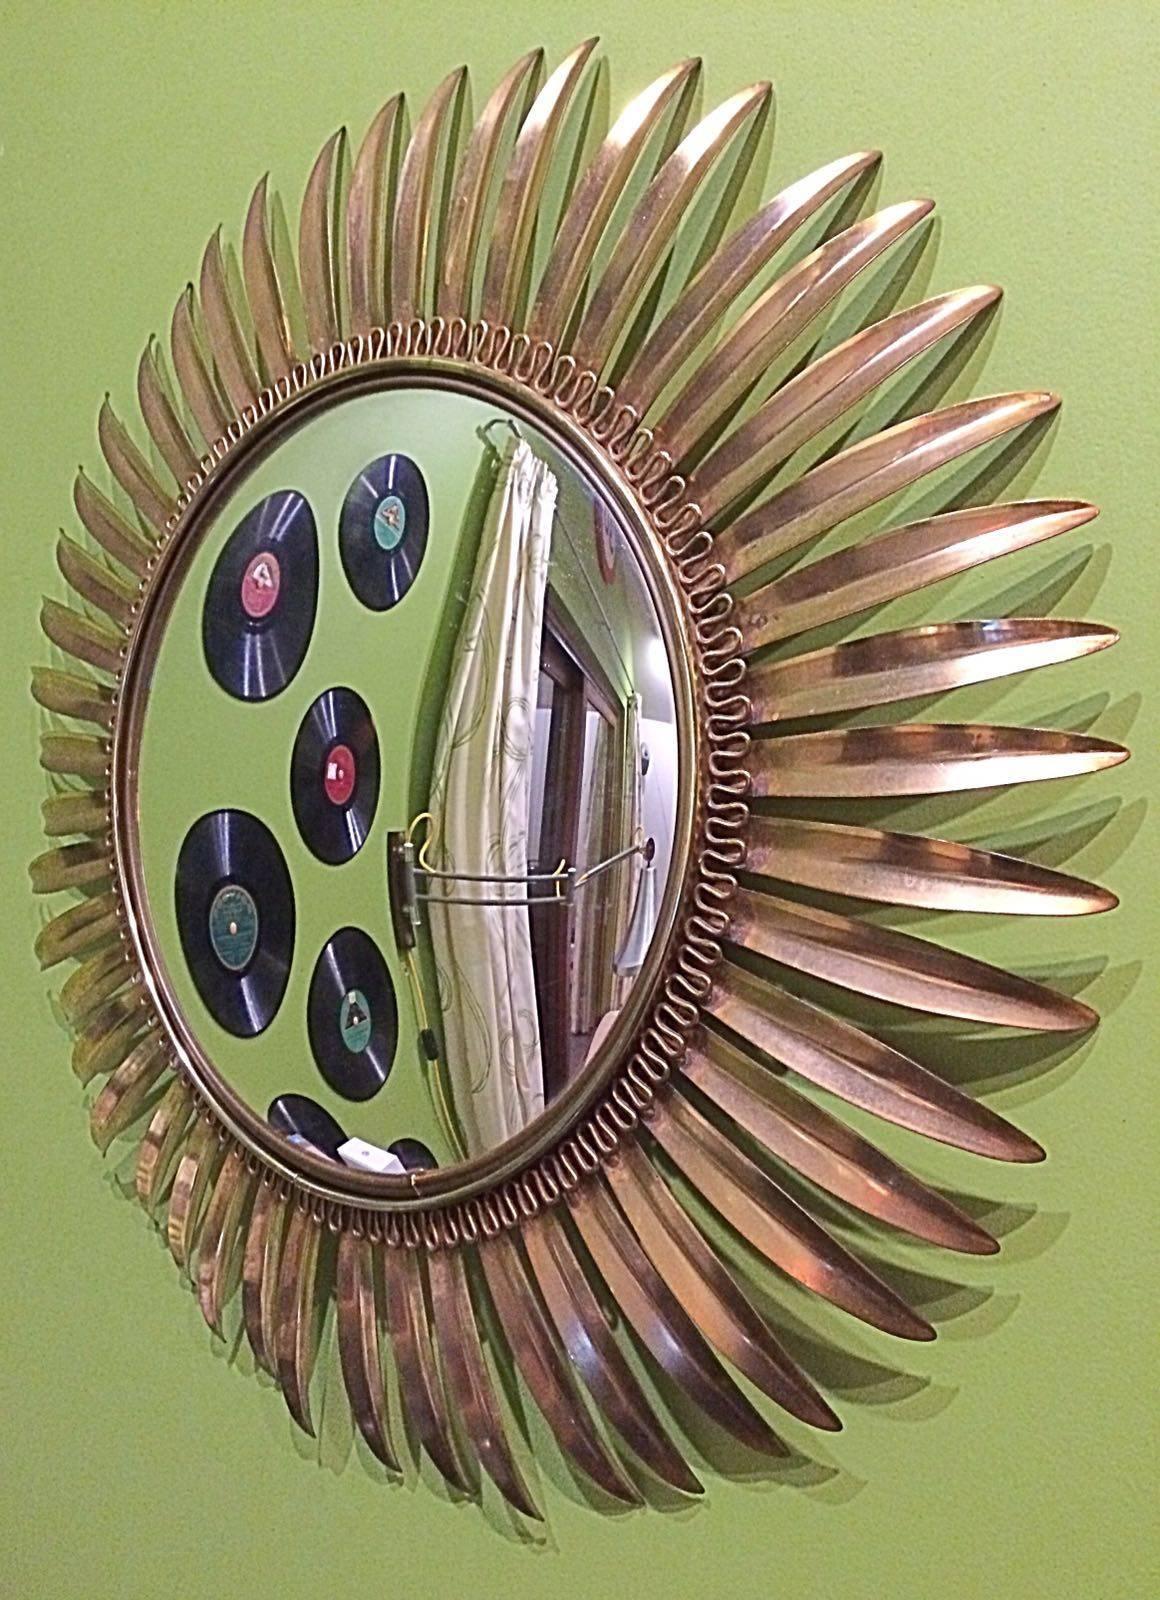 French Vintage Brass Sunburst Mirror, 1960s